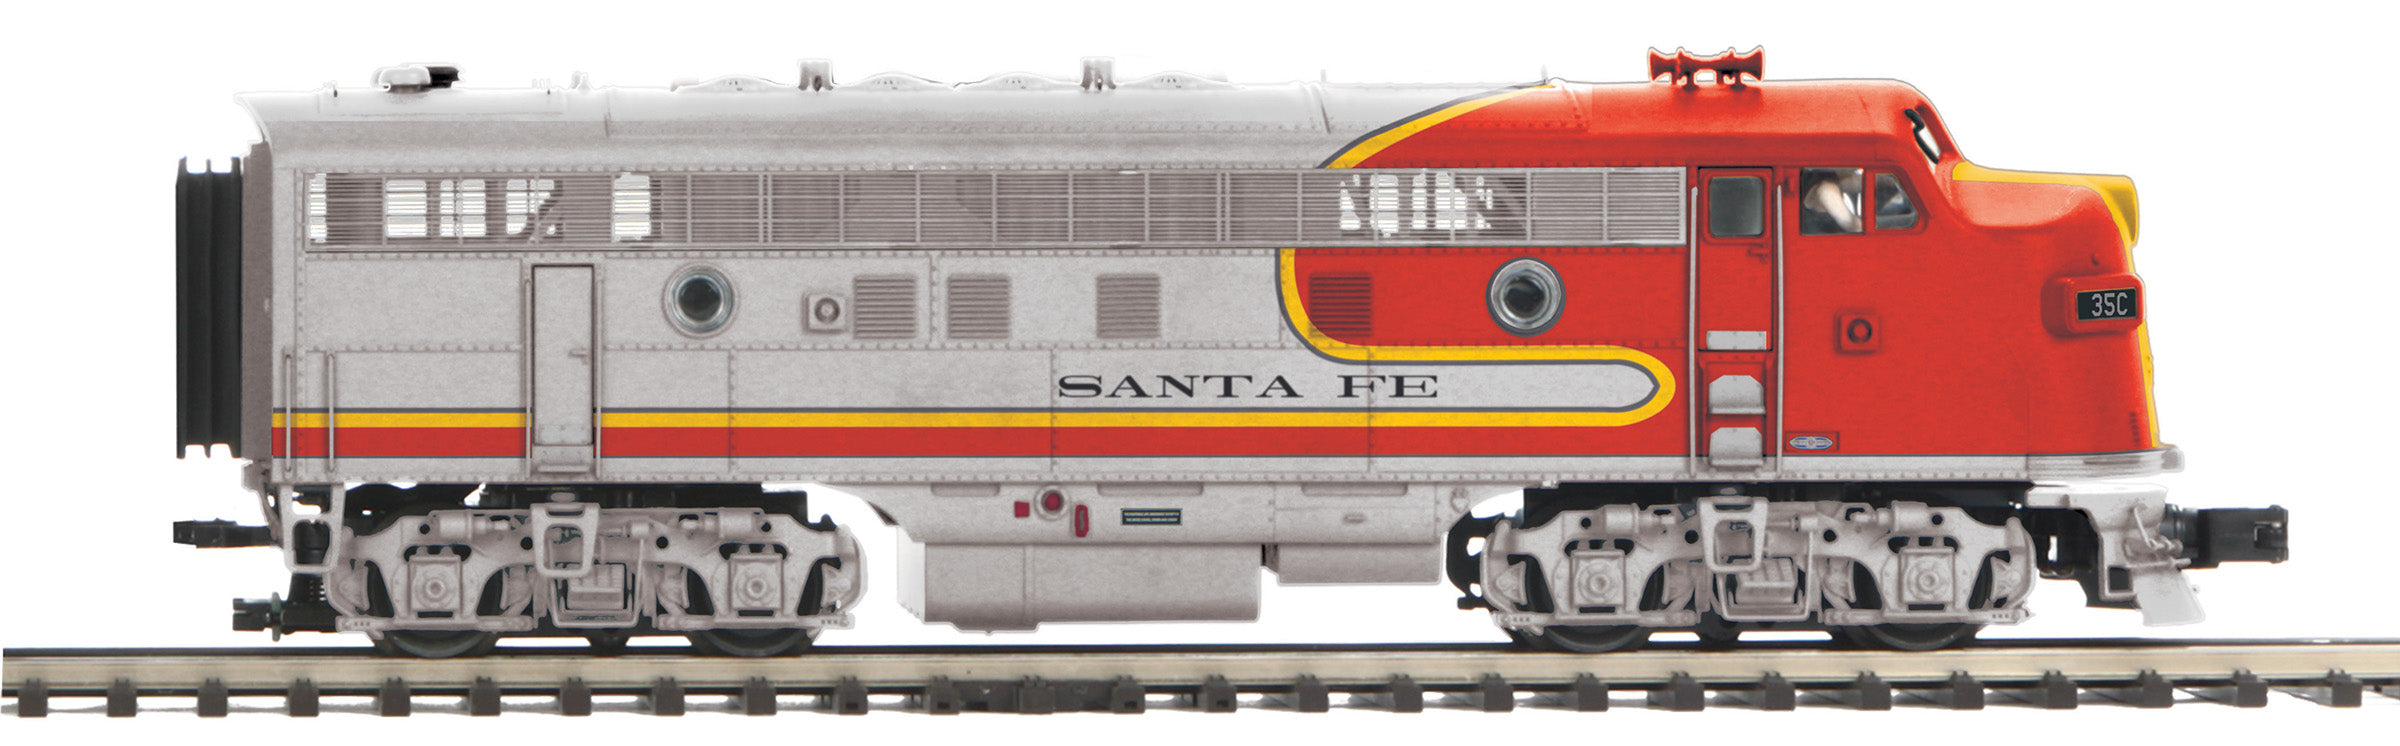 MTH 20-21586-1 - F-3 A Unit Diesel Engine "Santa Fe" #21 w/ PS3 (Hi-Rail Wheels)